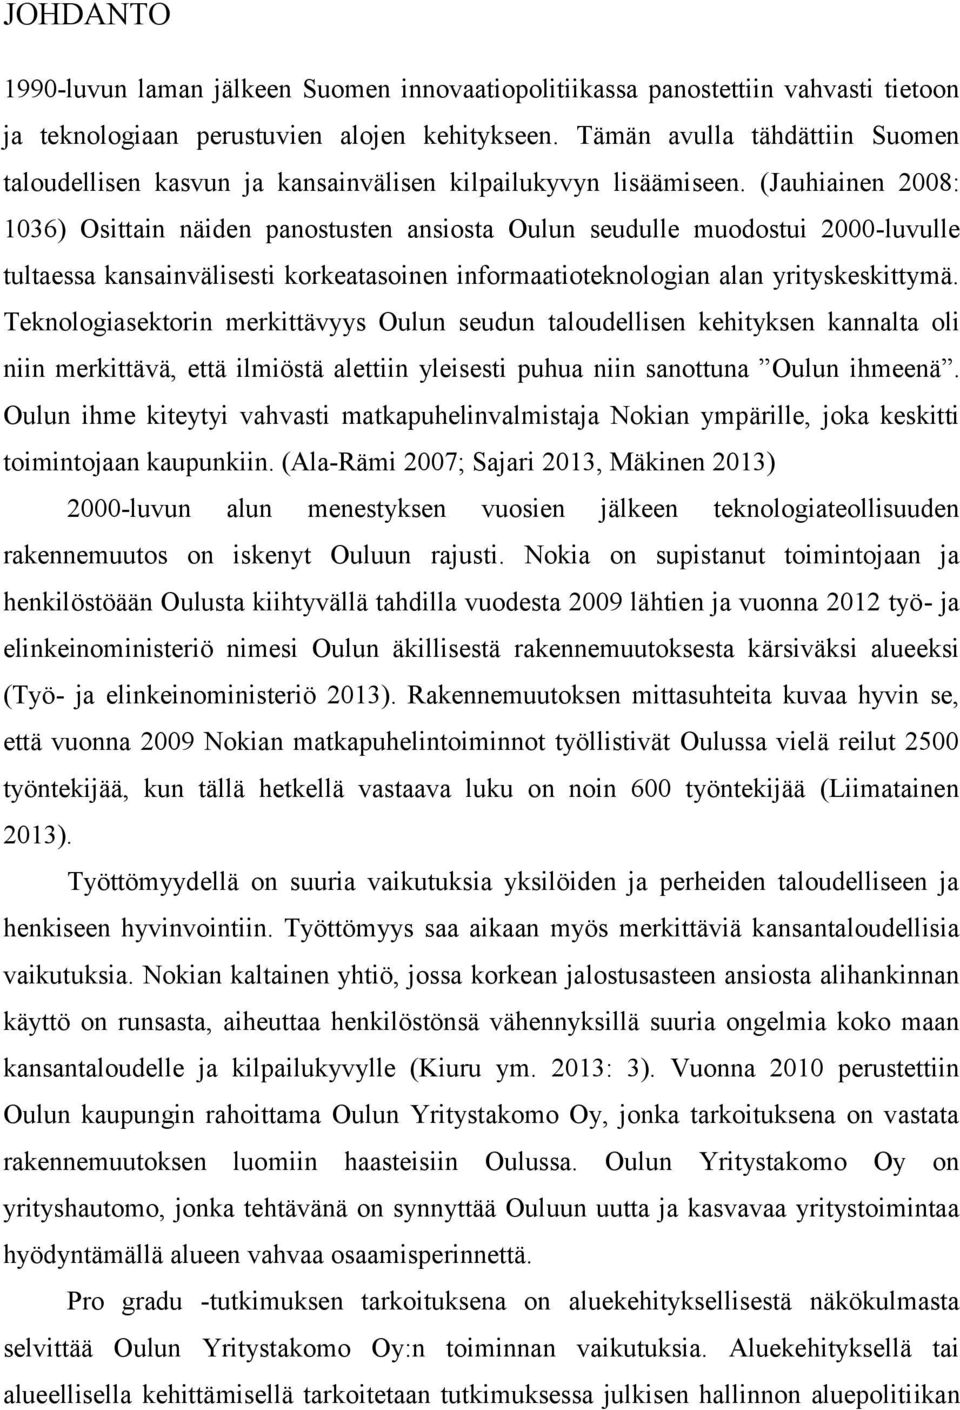 (Jauhiainen 2008: 1036) Osittain näiden panostusten ansiosta Oulun seudulle muodostui 2000-luvulle tultaessa kansainvälisesti korkeatasoinen informaatioteknologian alan yrityskeskittymä.